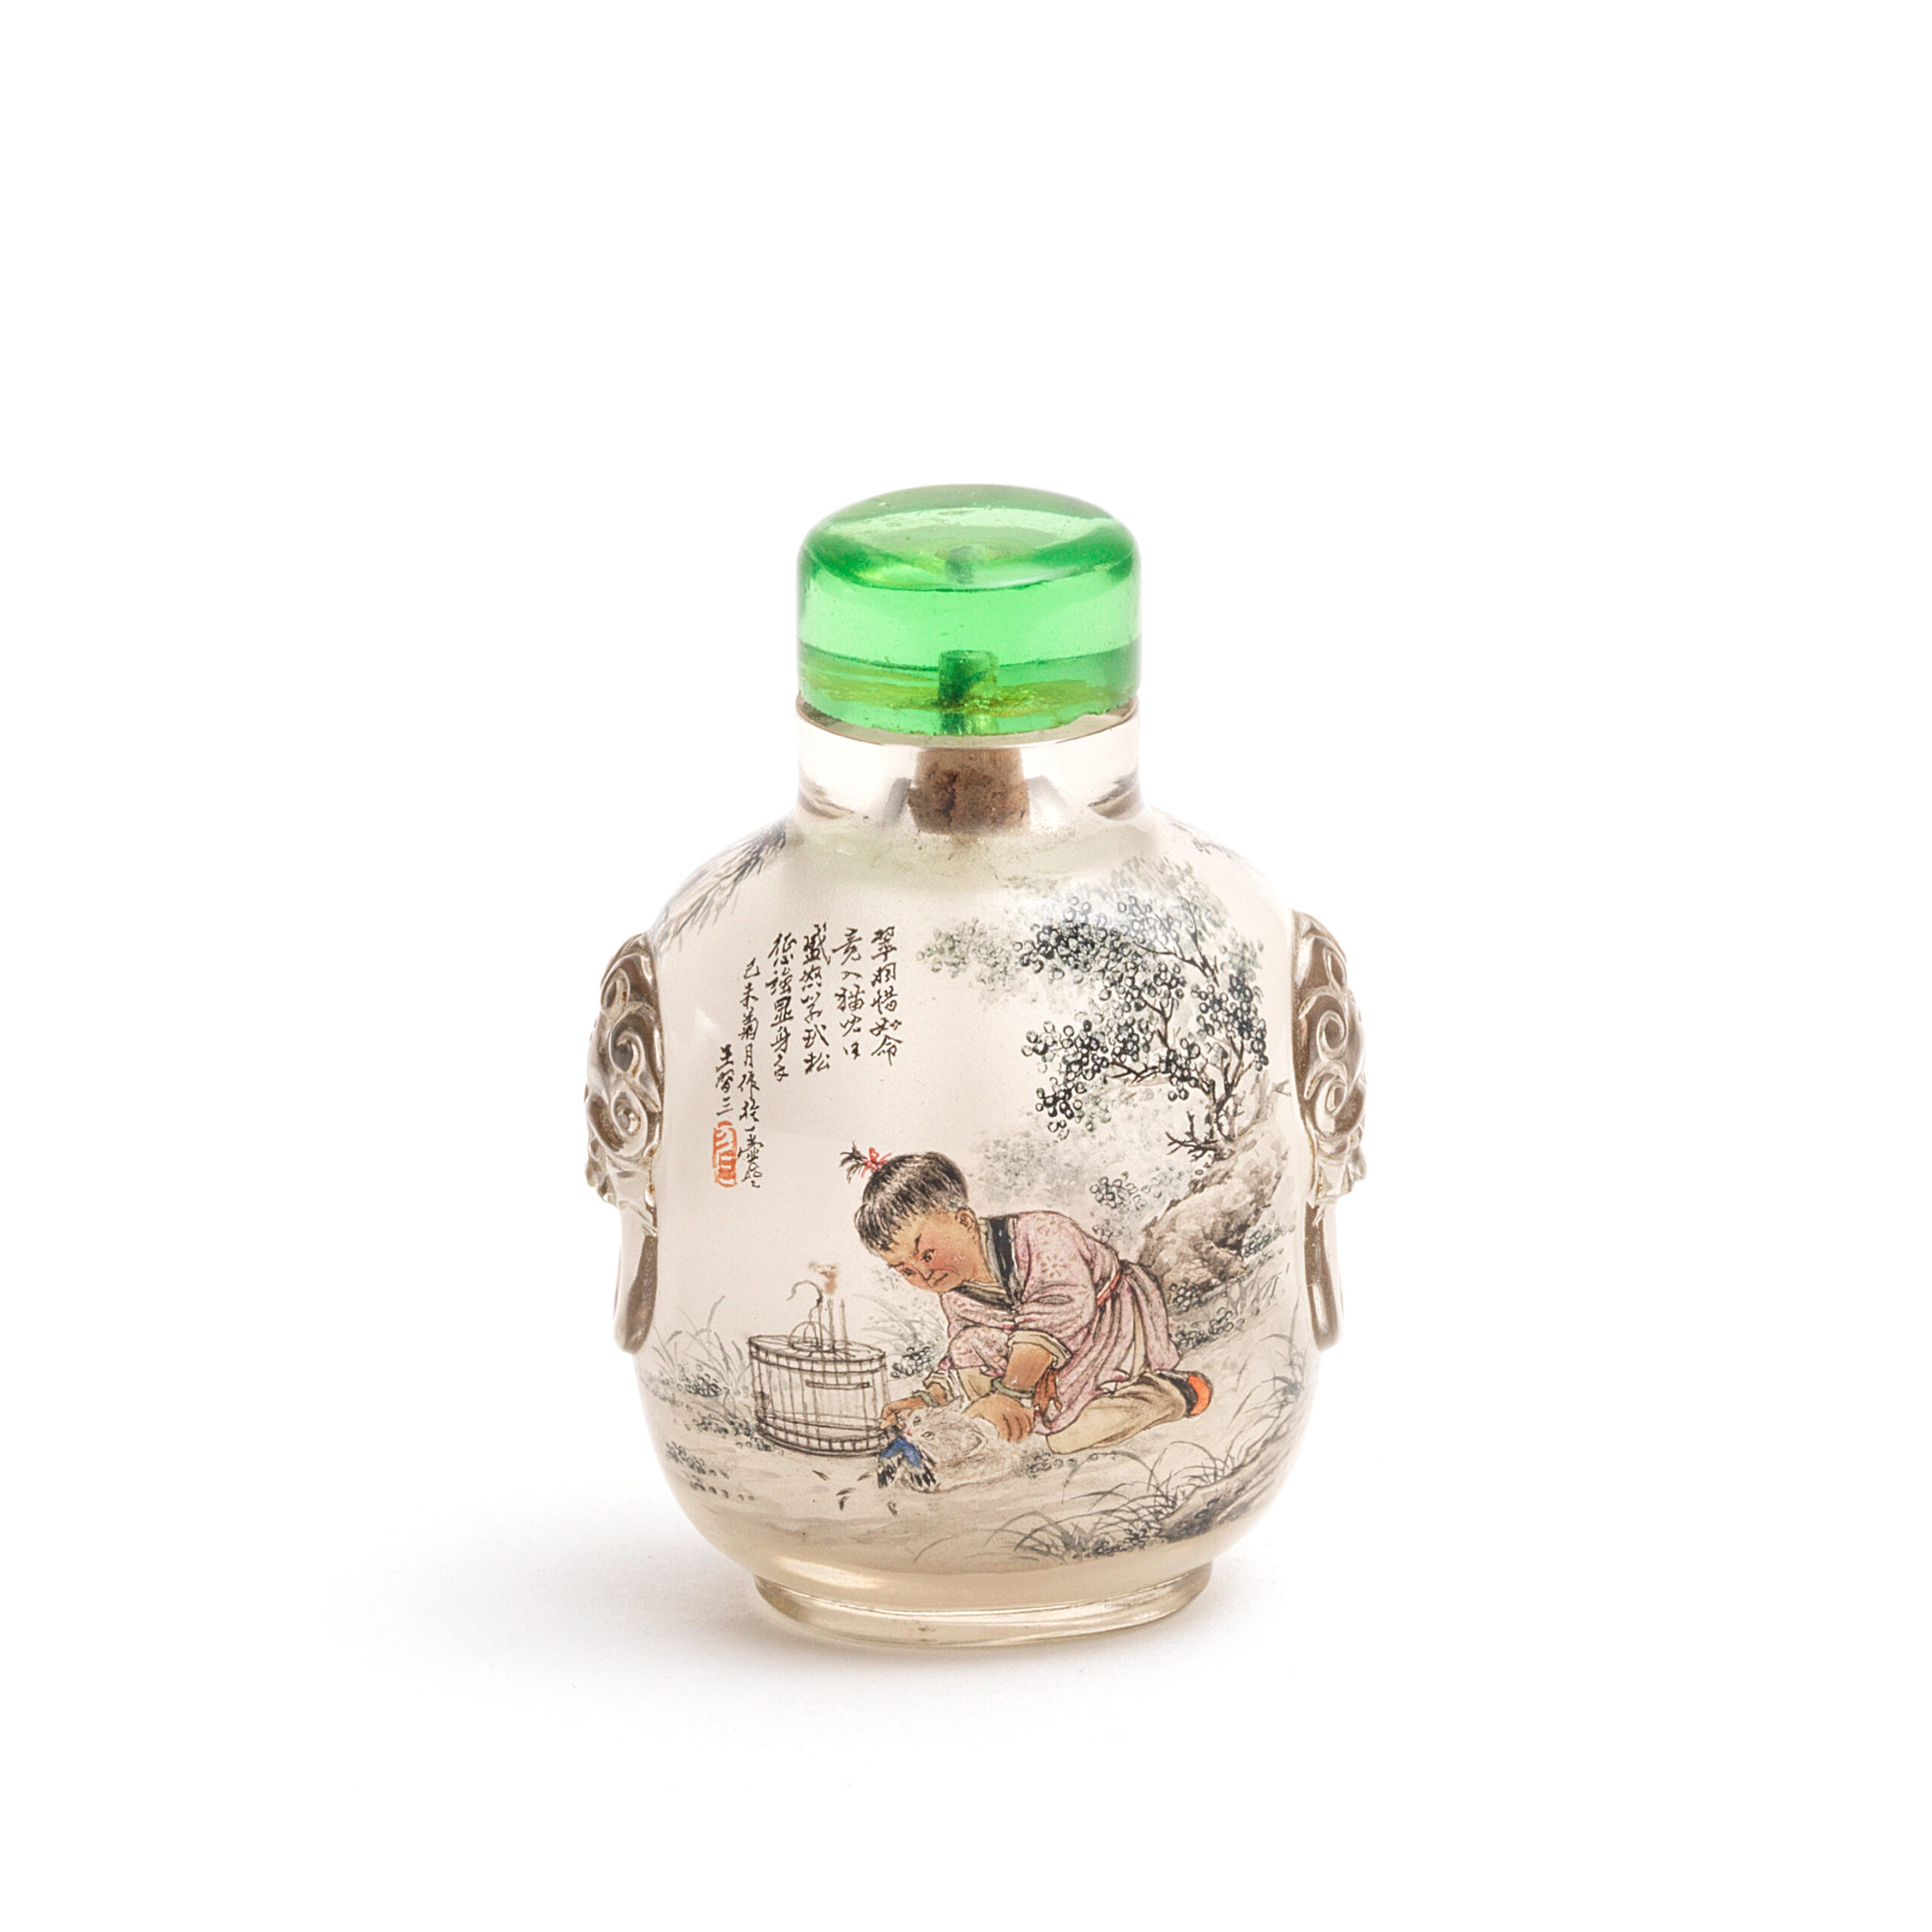 AN INSIDE PAINTED GLASS SNUFF BOTTLE, Wang Xisan, dated jiwei year (1979)